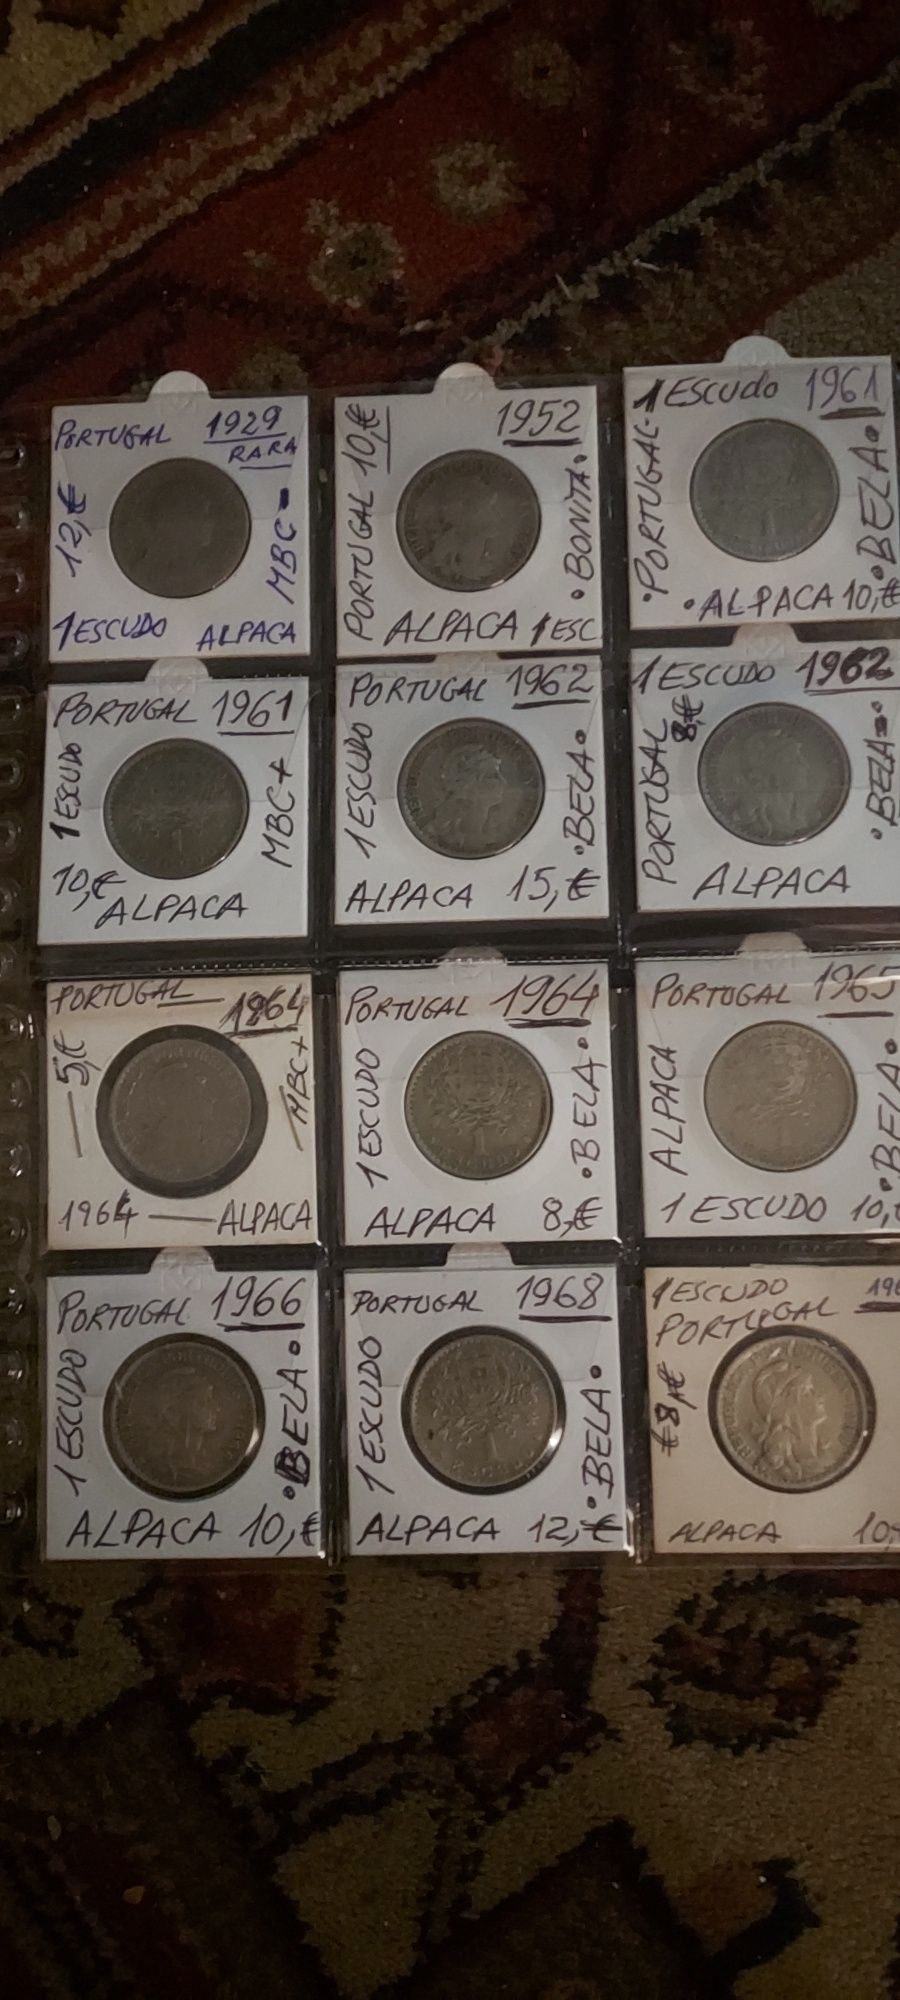 VENDO LOTE DE 24 moedas de Portugal. Selos novos também.  Fotos.